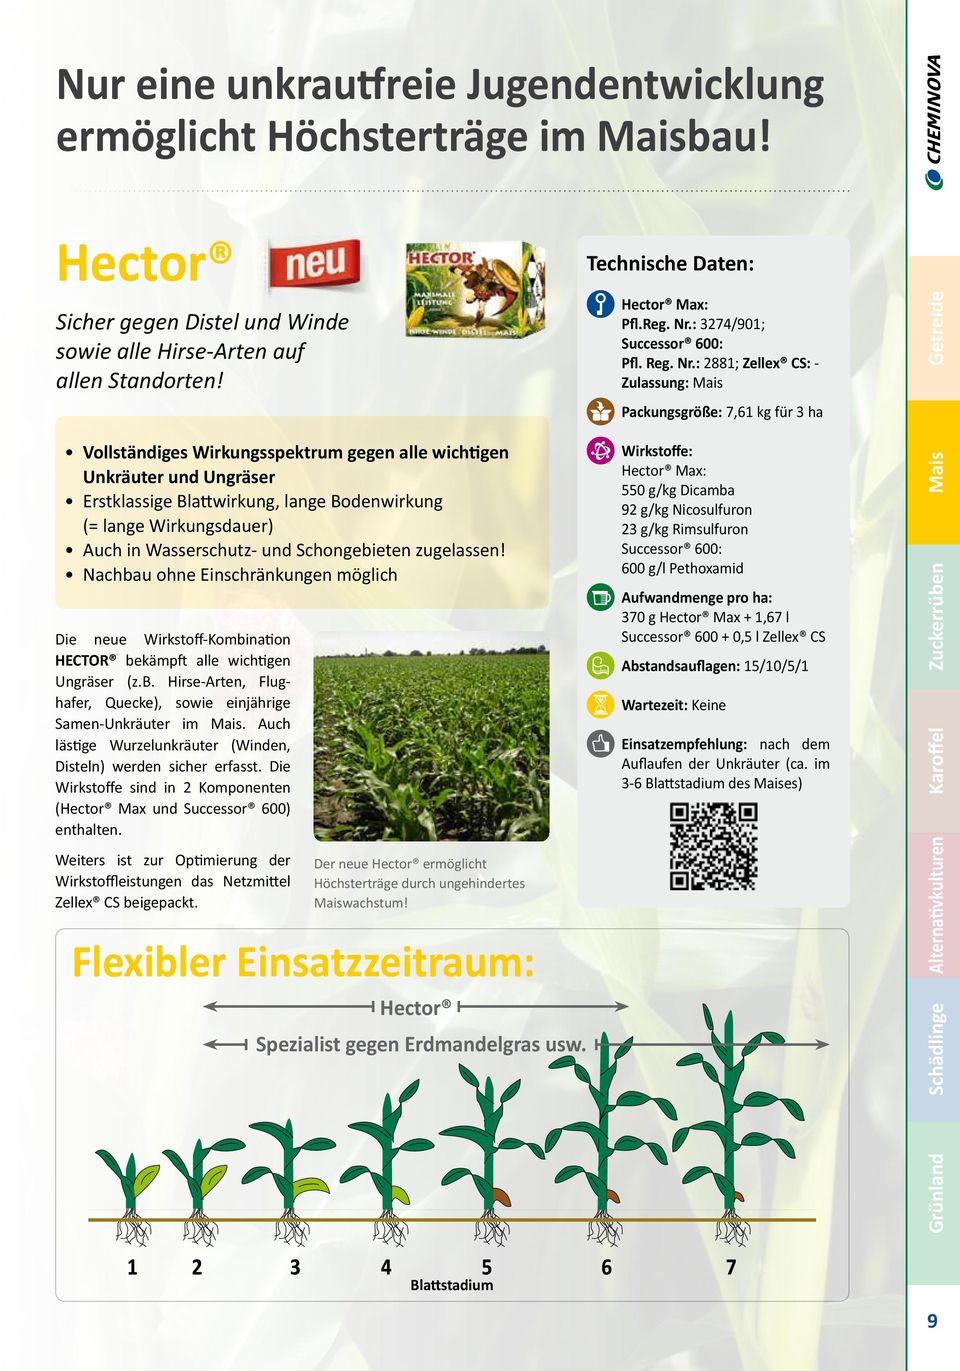 Nachbau ohne Einschränkungen möglich Die neue Wirkstoff-Kombination HECTOR bekämpft alle wichtigen Ungräser (z.b. Hirse-Arten, Flughafer, Quecke), sowie einjährige Samen-Unkräuter im Mais.